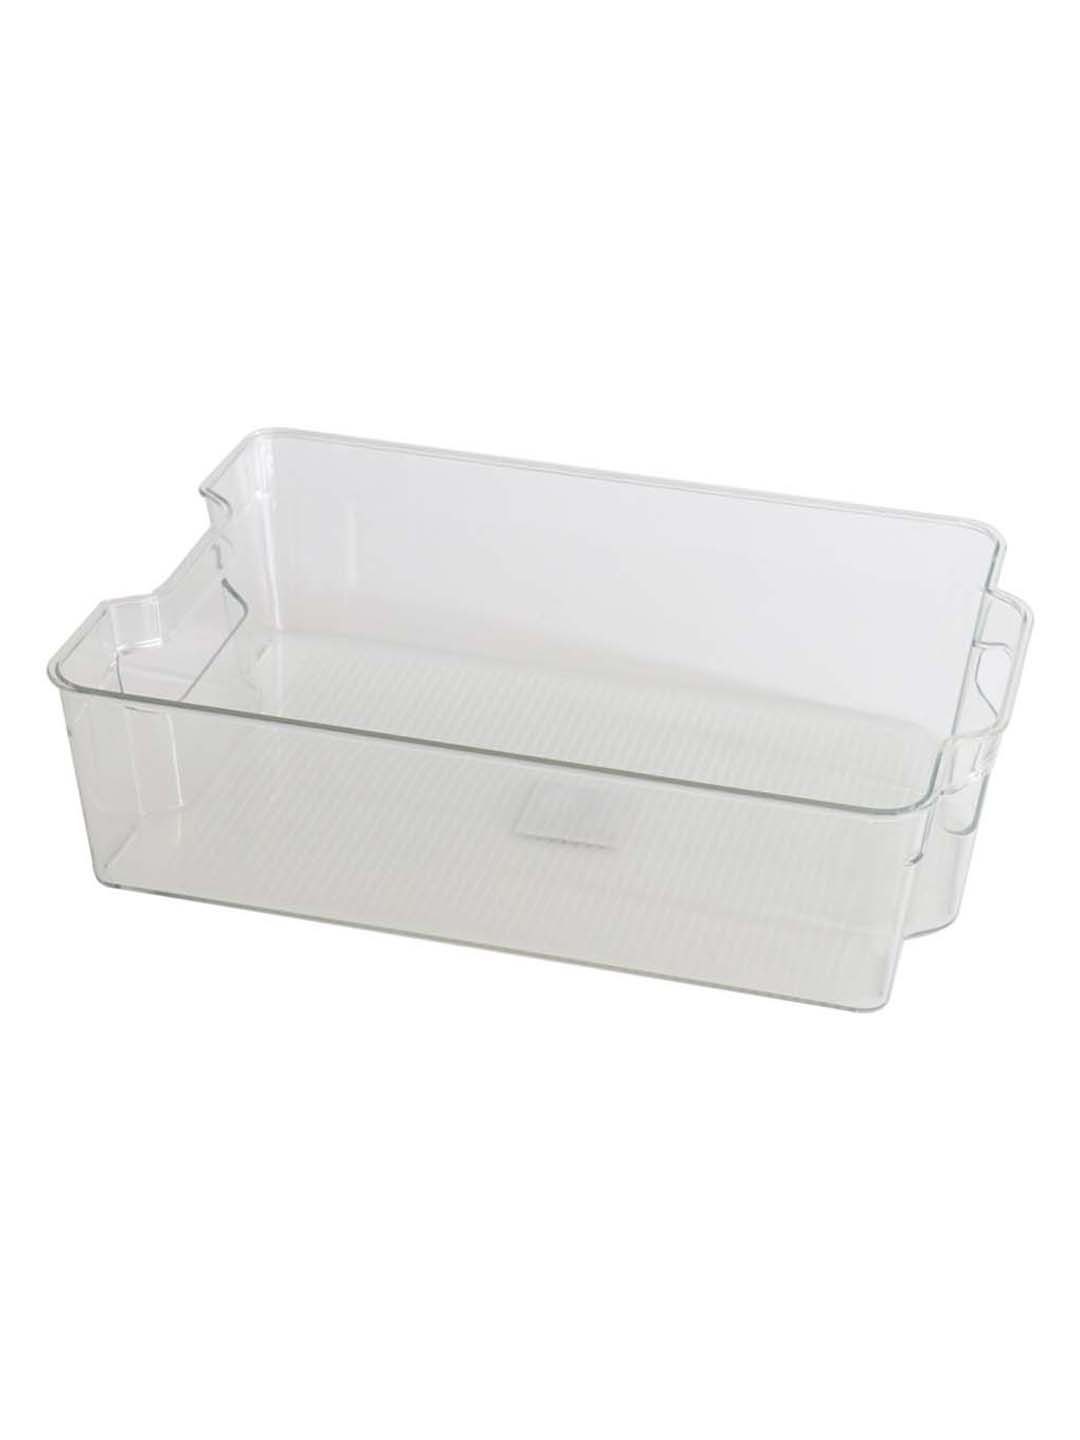 MARKET99 Transparent Plastic Food Storage Box Container Price in India